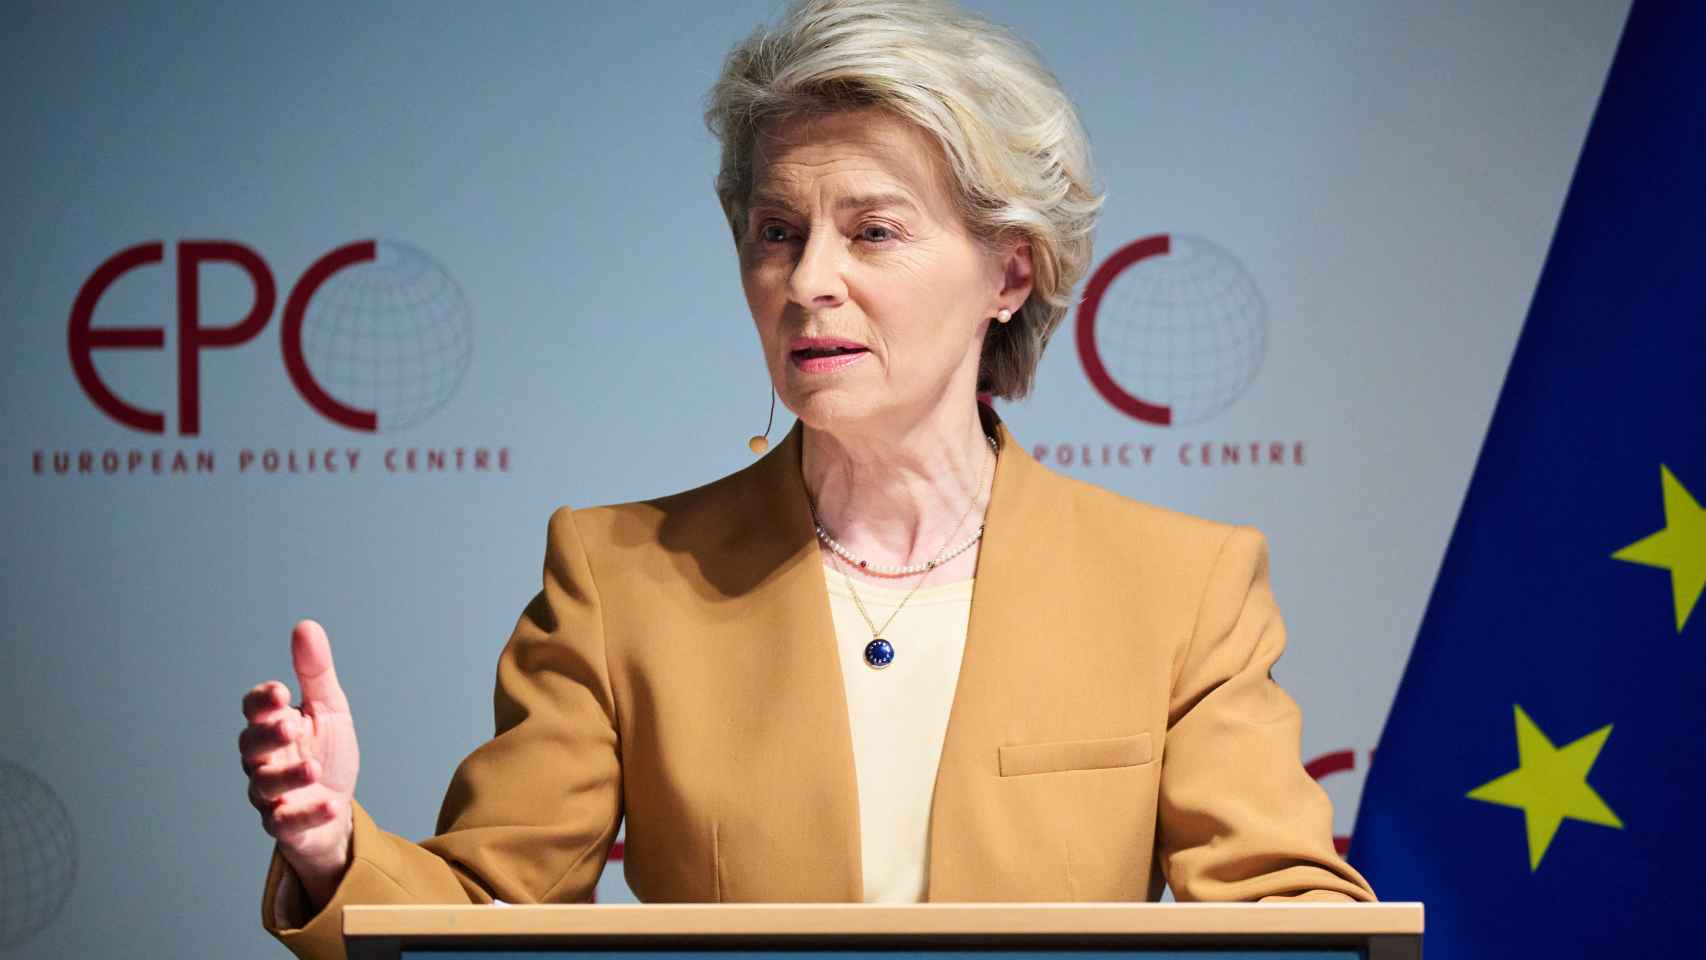 La presidenta de la Comisión, Ursula von der Leyen, durante su discurso la semana pasada sobre China